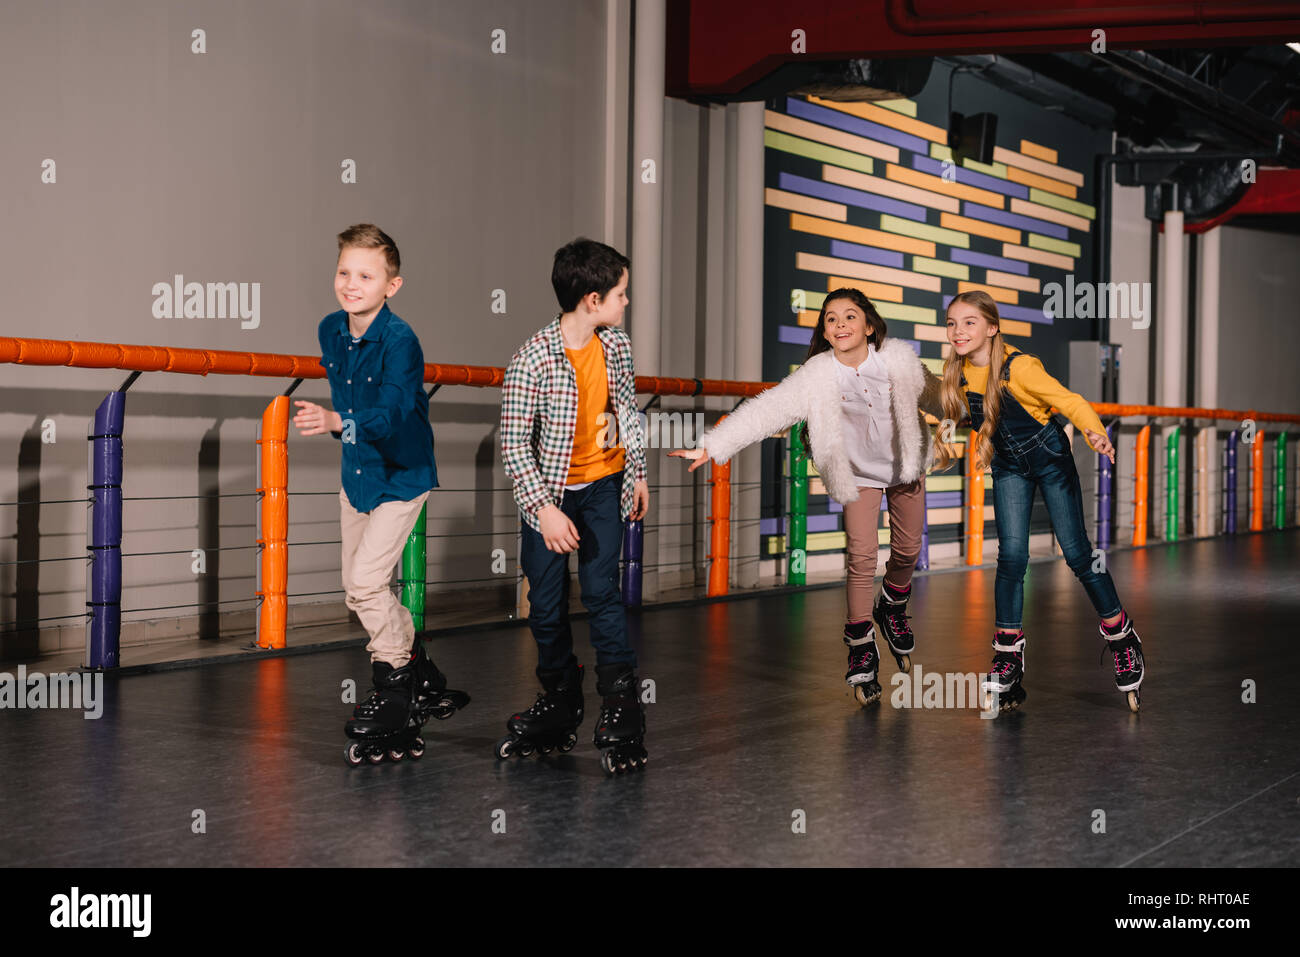 Laughing kids in roller skates enjoying leisure Stock Photo